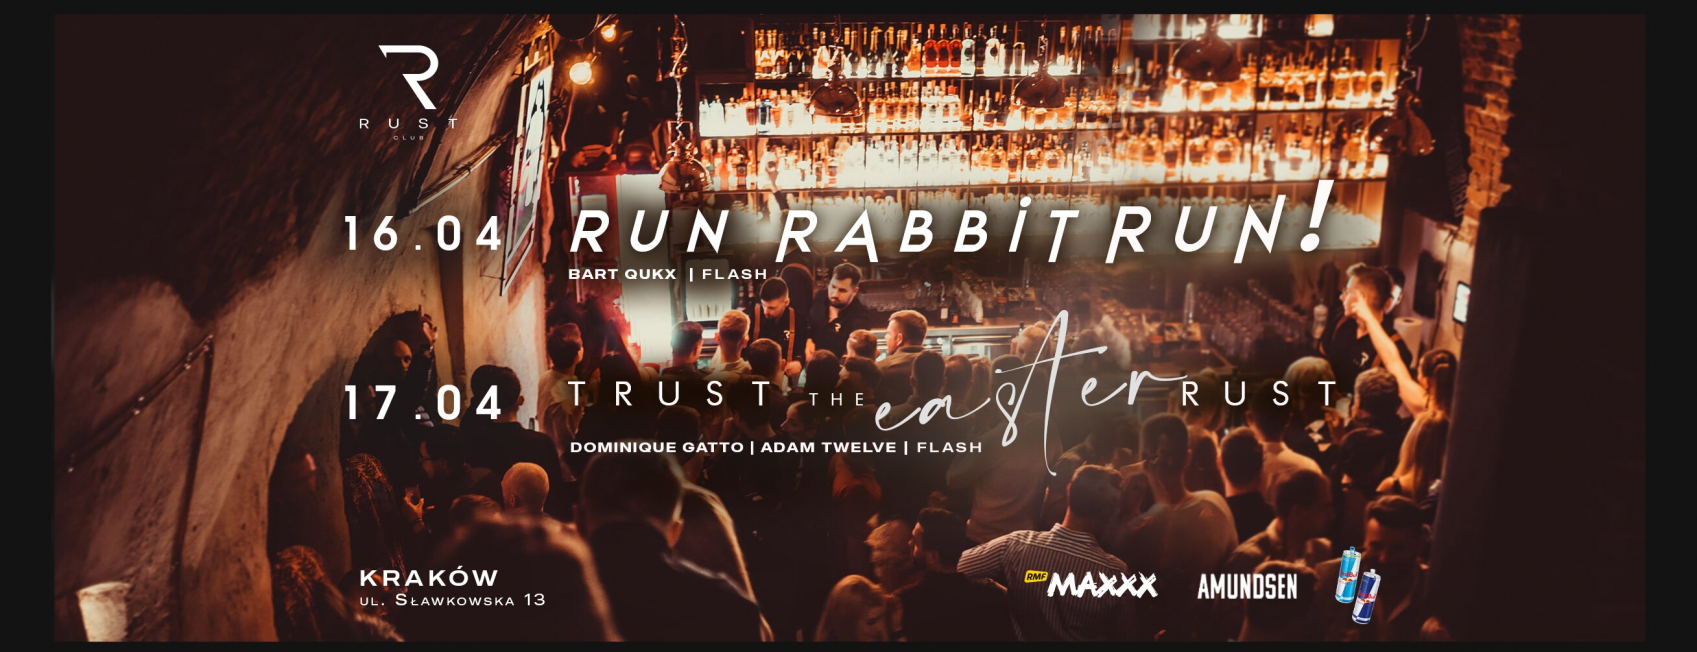 Run Rabbit Run w Klubie Rust. To gratka dla wszystkich, którzy pragną naprawdę celebrować nadchodzące święta! 